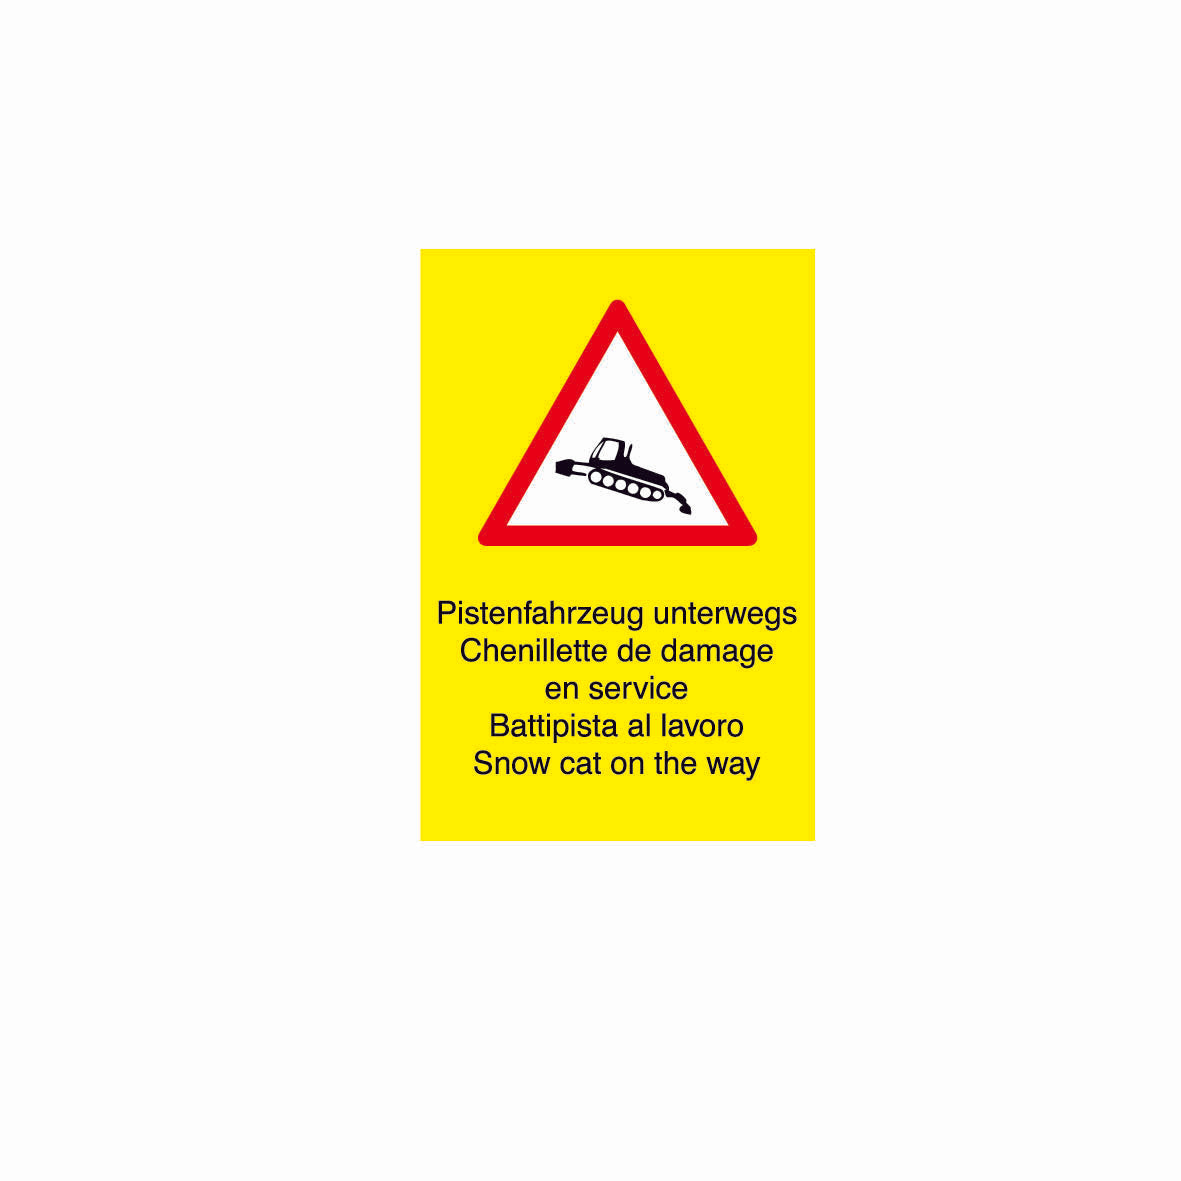 SKUS Gefahrensignal,, 1.0005, fluoreszierend gelb, Logo Pistenfahrzeug, 40/60 cm, Alu Composite 3 mm